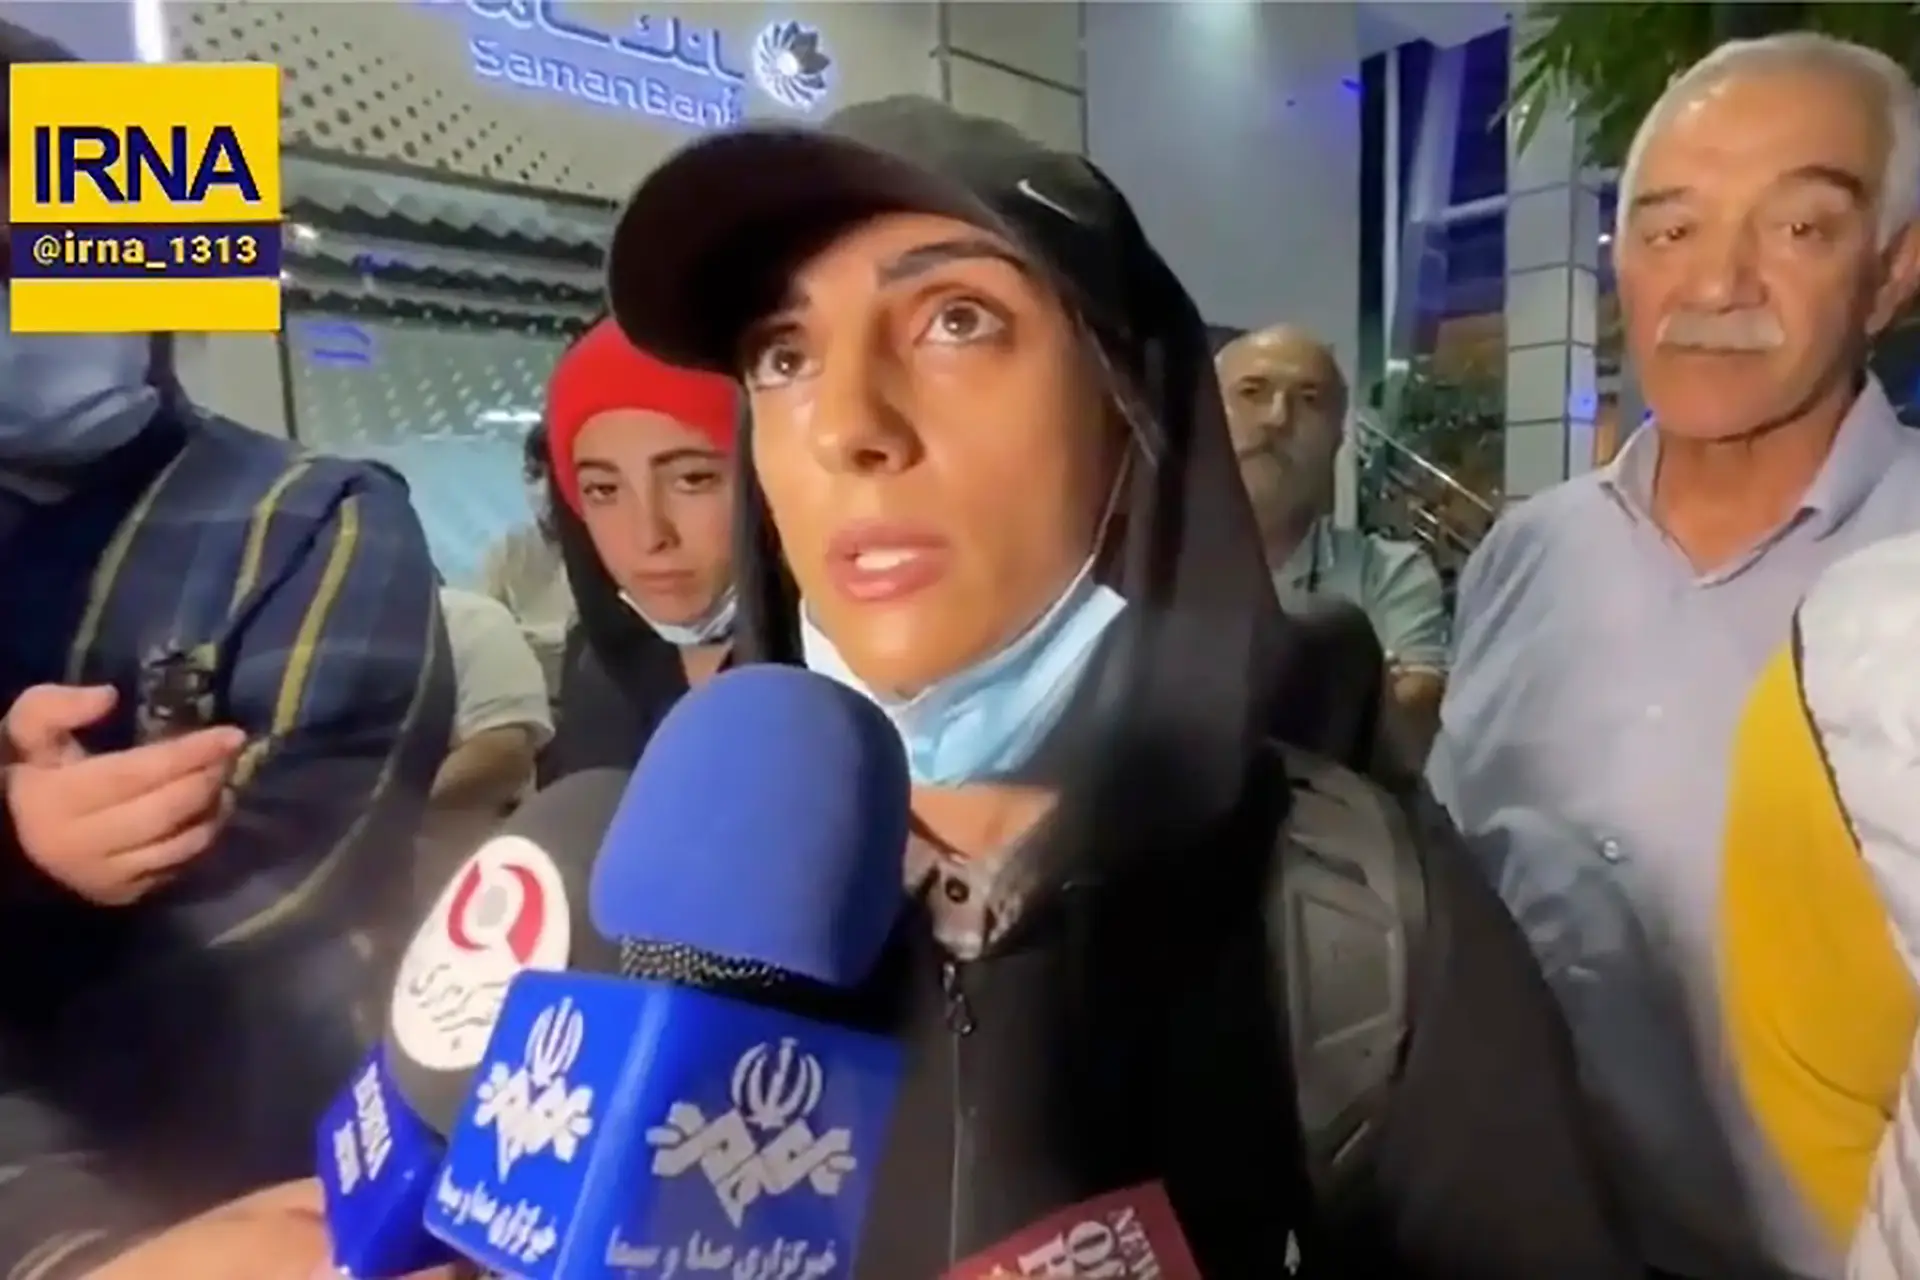 Atleta iraniana Elnaz Rekabi recebida em Teerão como heroína após competir sem véu